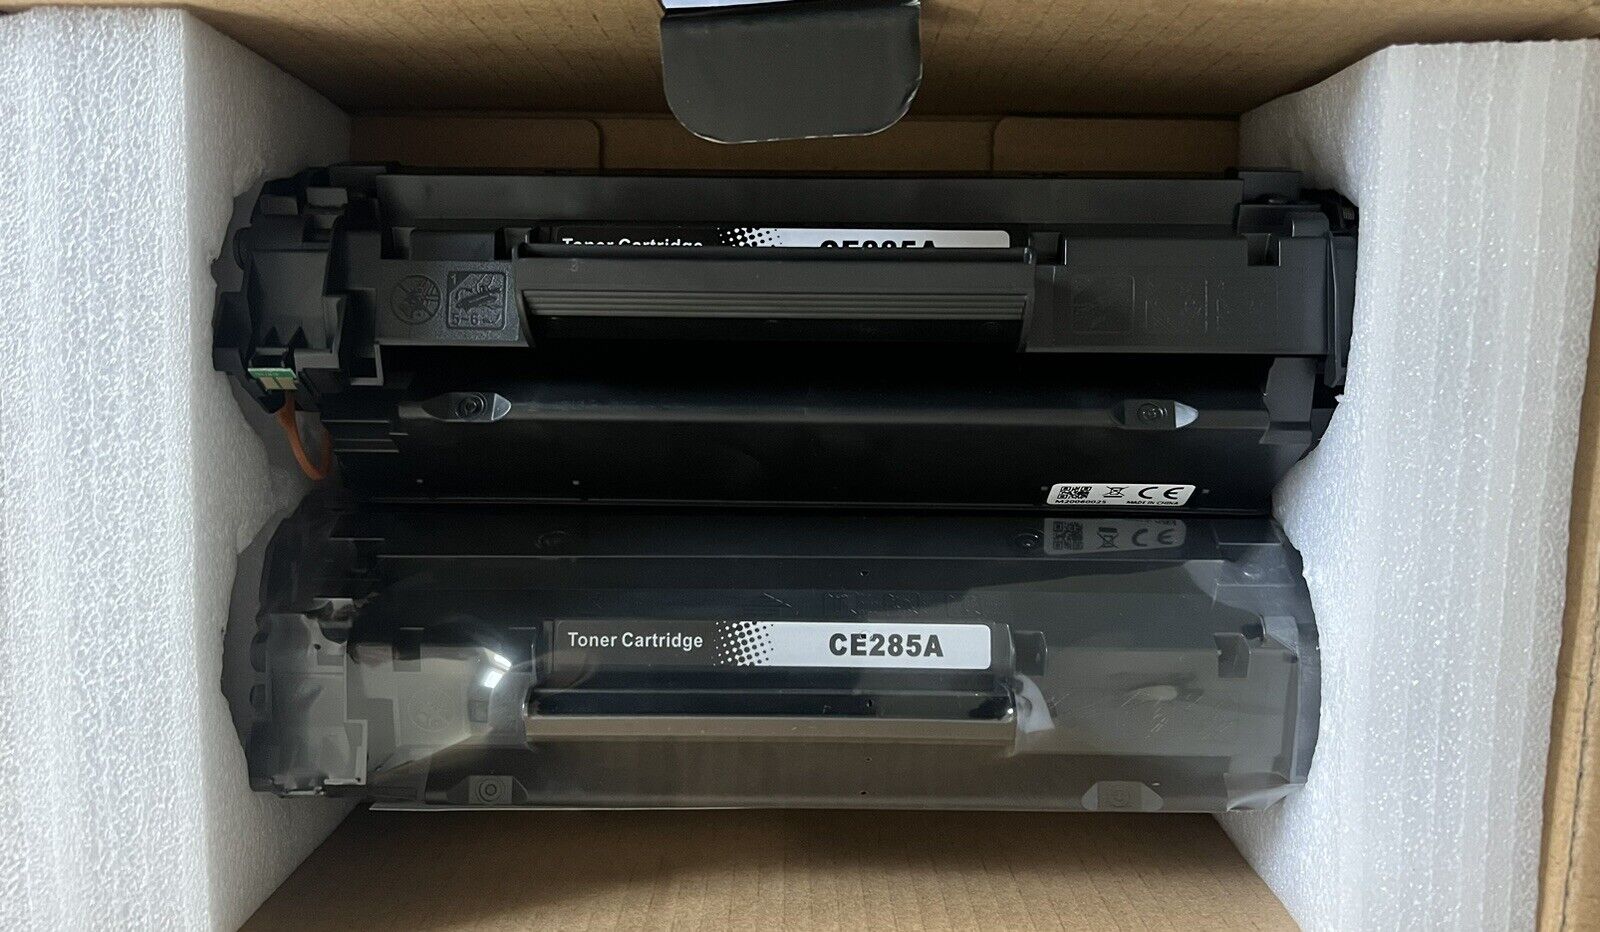 2 pack of CE285D Toner Cartridges (black ink)